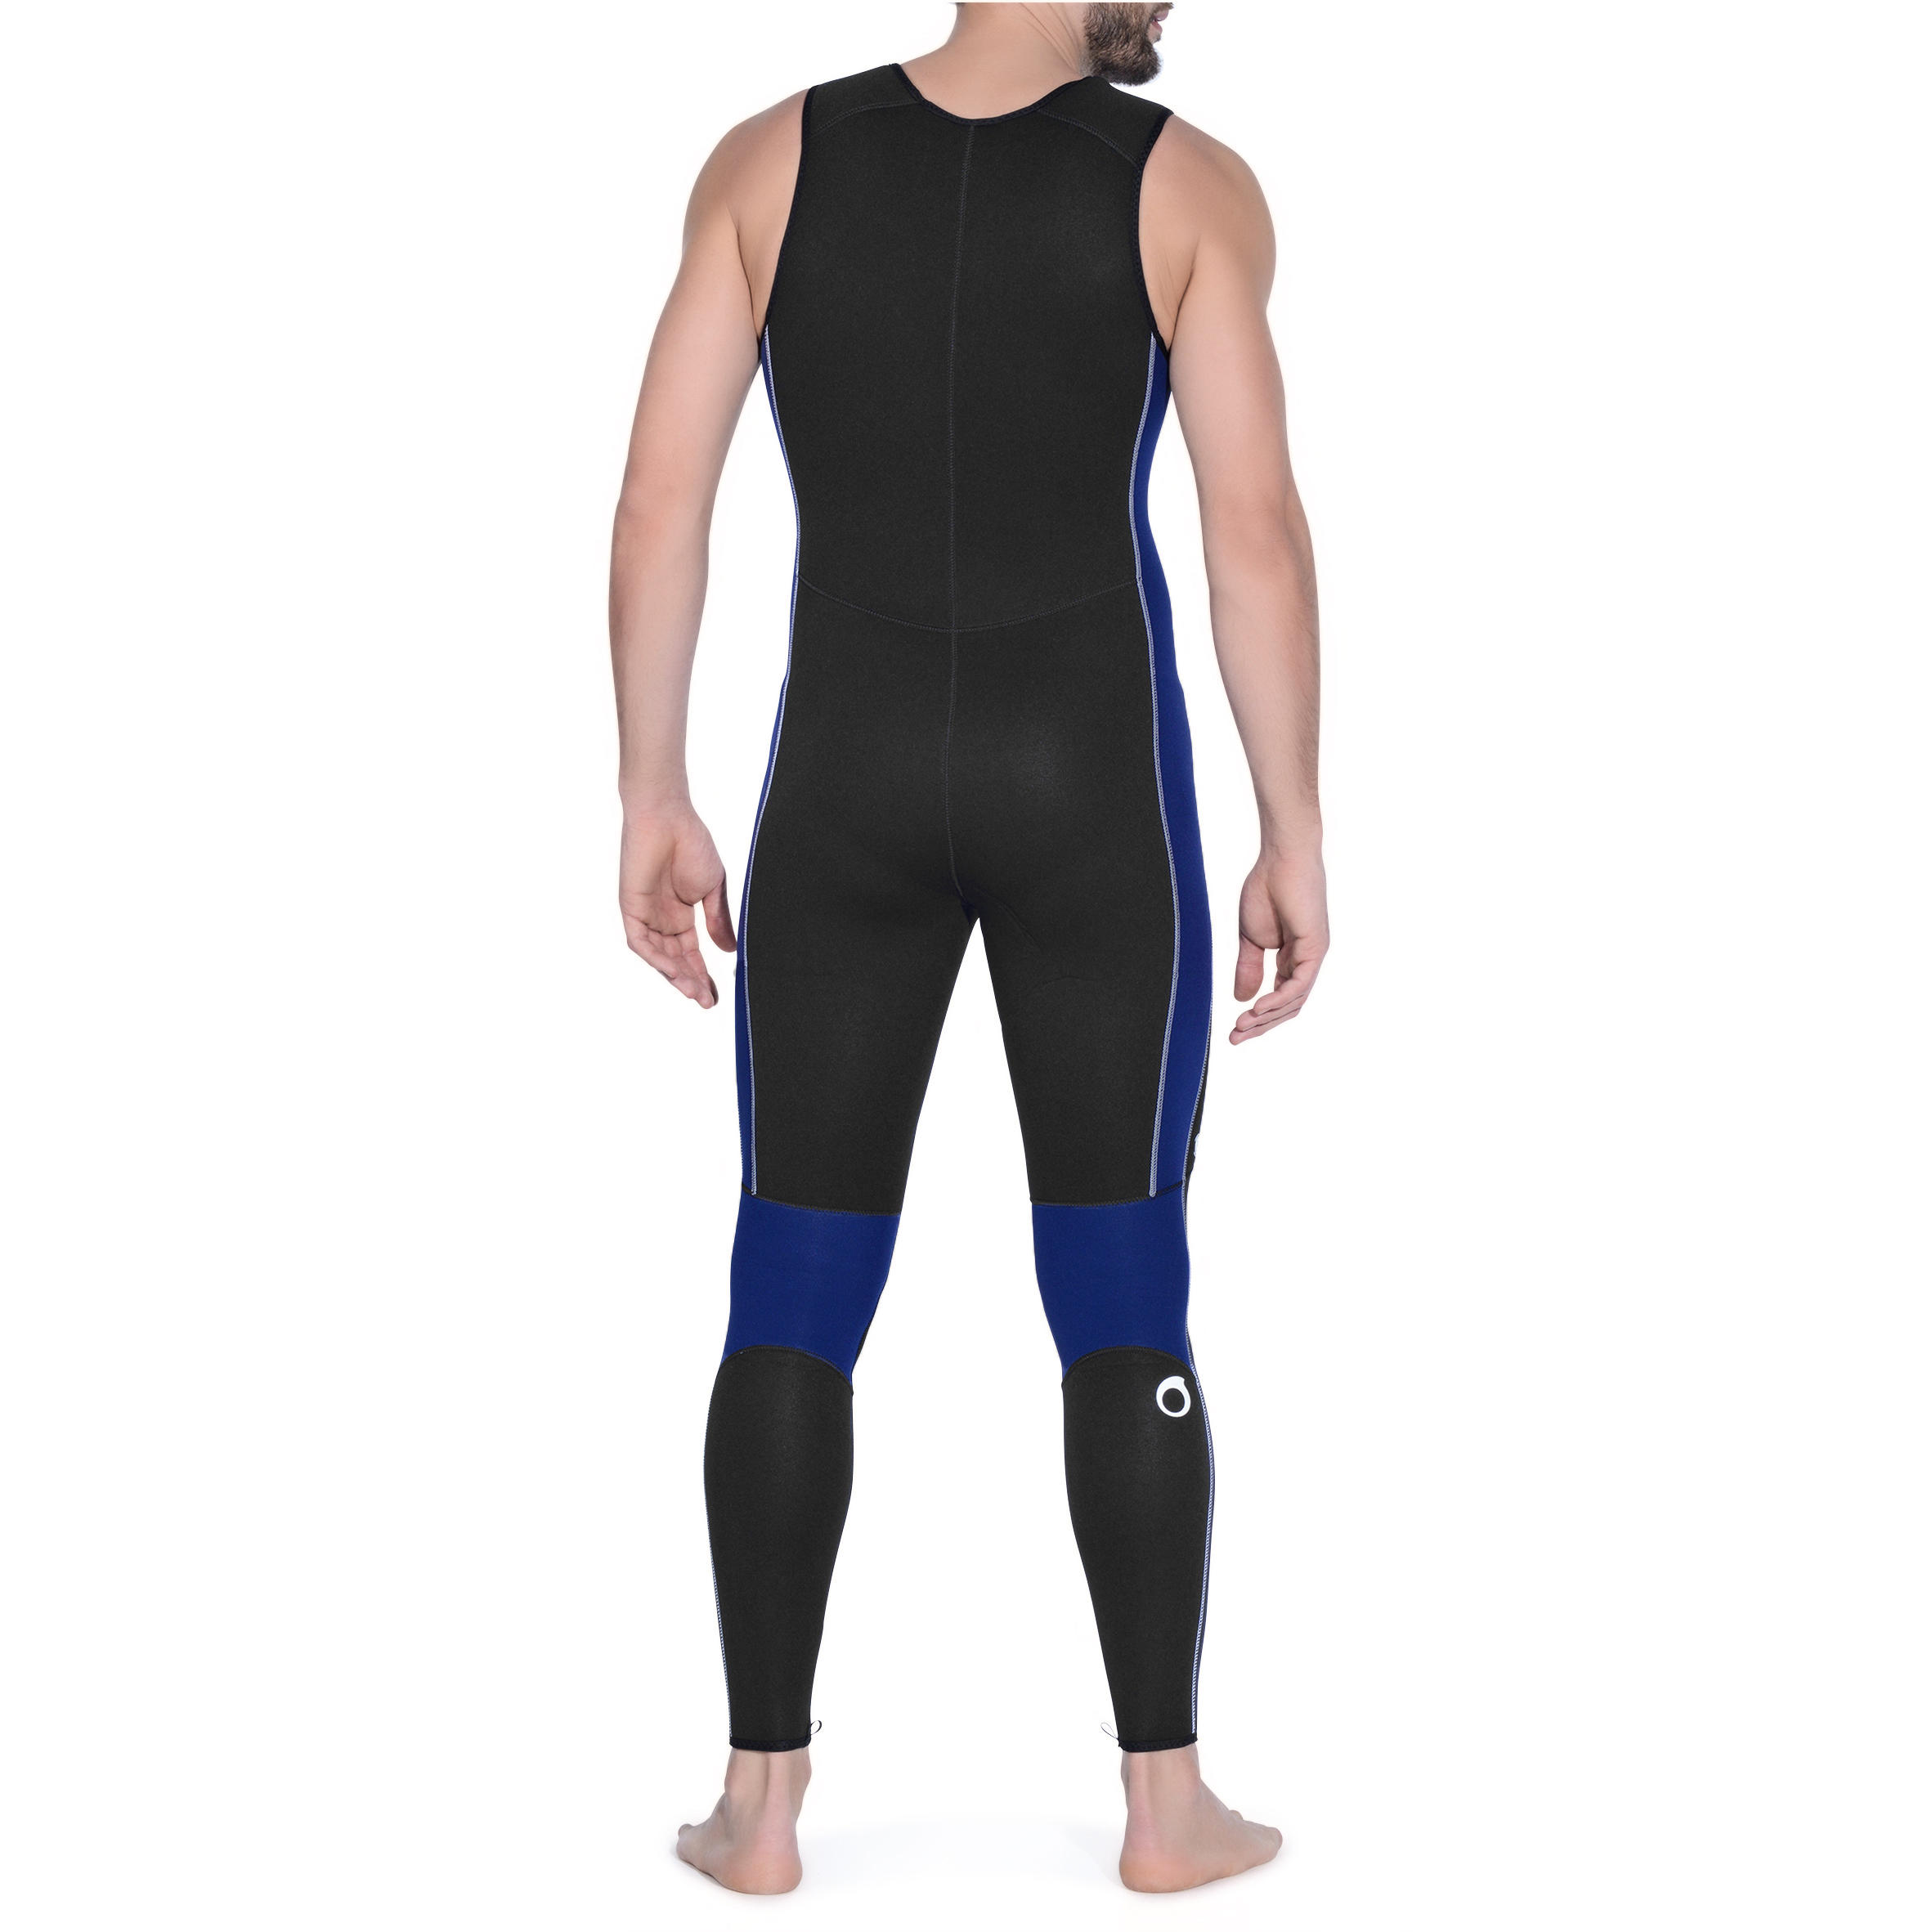 Men's diving sleeveless wetsuit 5.5 mm neoprene SCD black 4/14